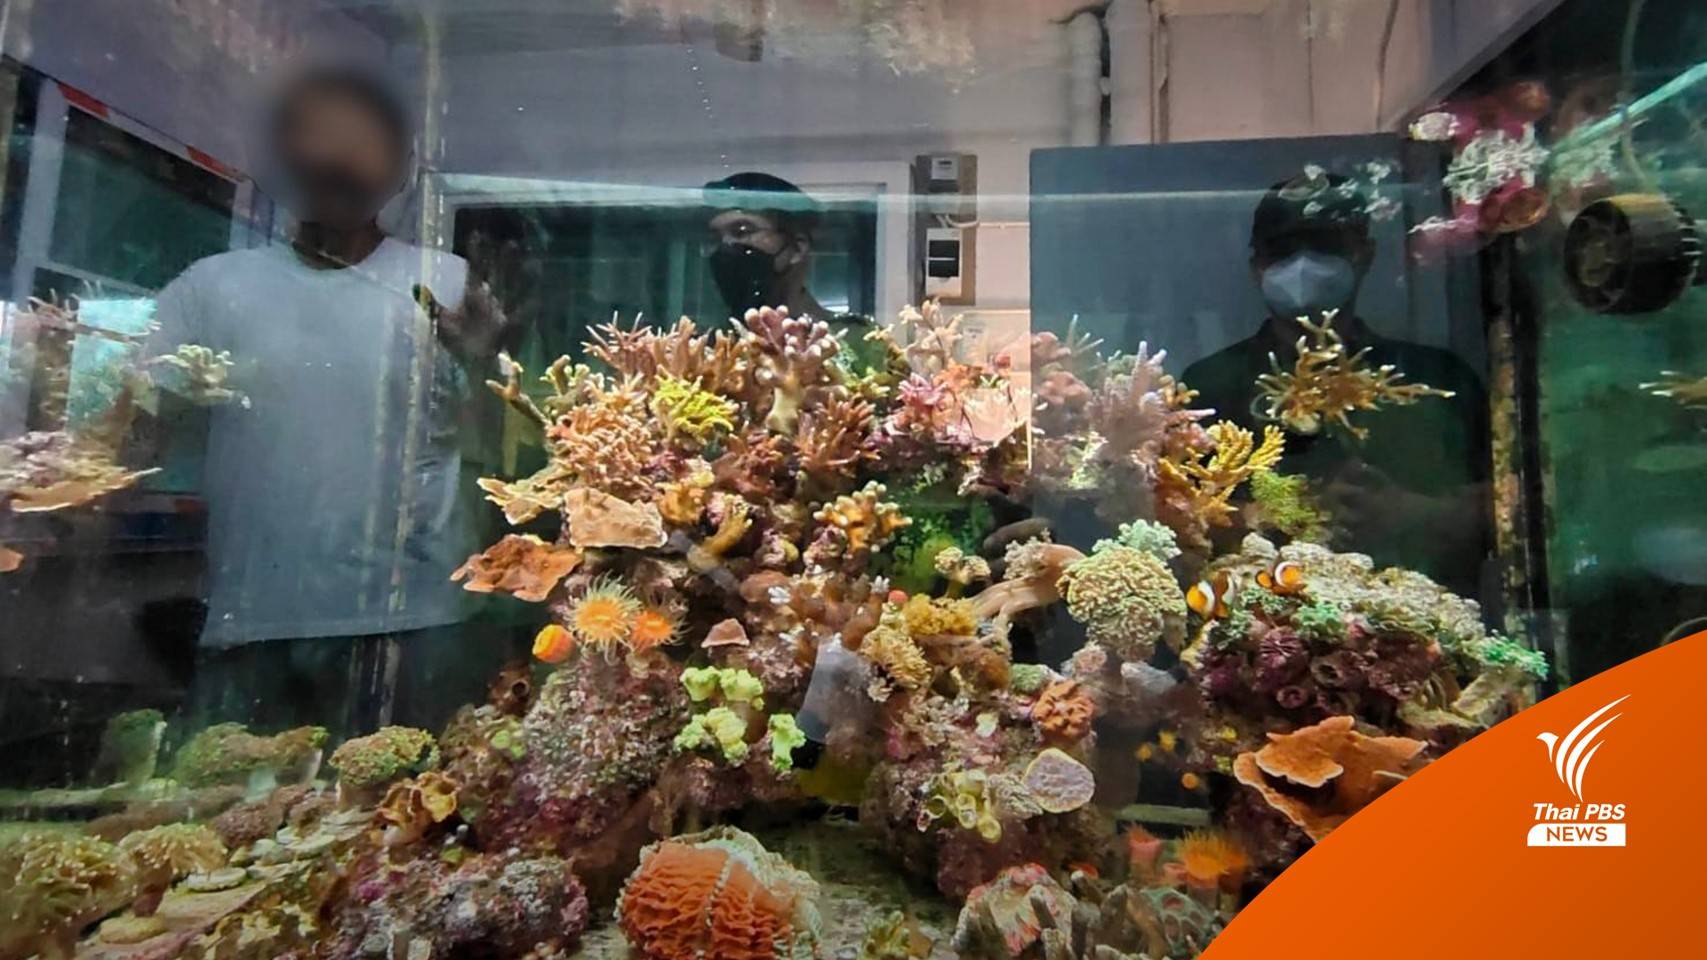 บุกจับแหล่งค้าออนไลน์ "ปะการัง-กัลปังหา" ยึดของกลาง 300 ชิ้น